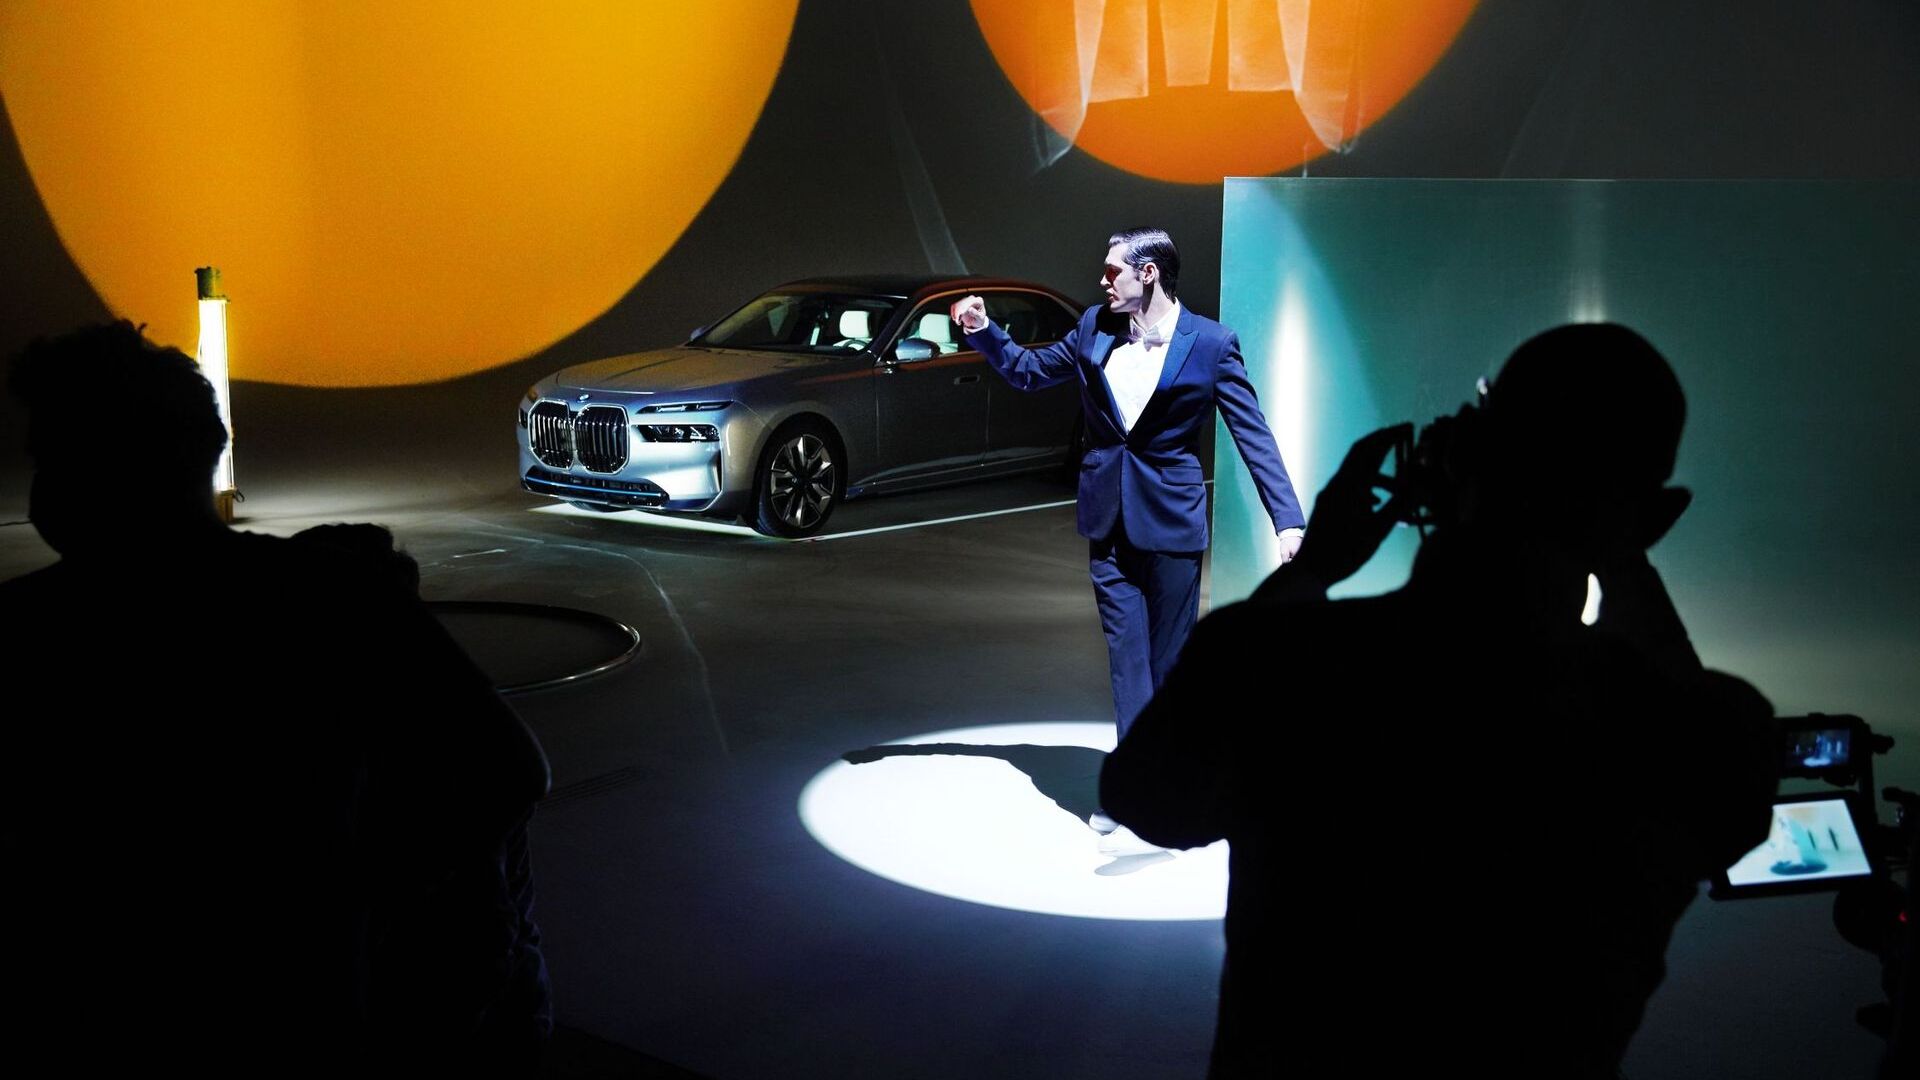 Der BMW i7 wurde vom britischen Modefotografen Nick Knight nach den Kriterien des Forwardism neu interpretiert